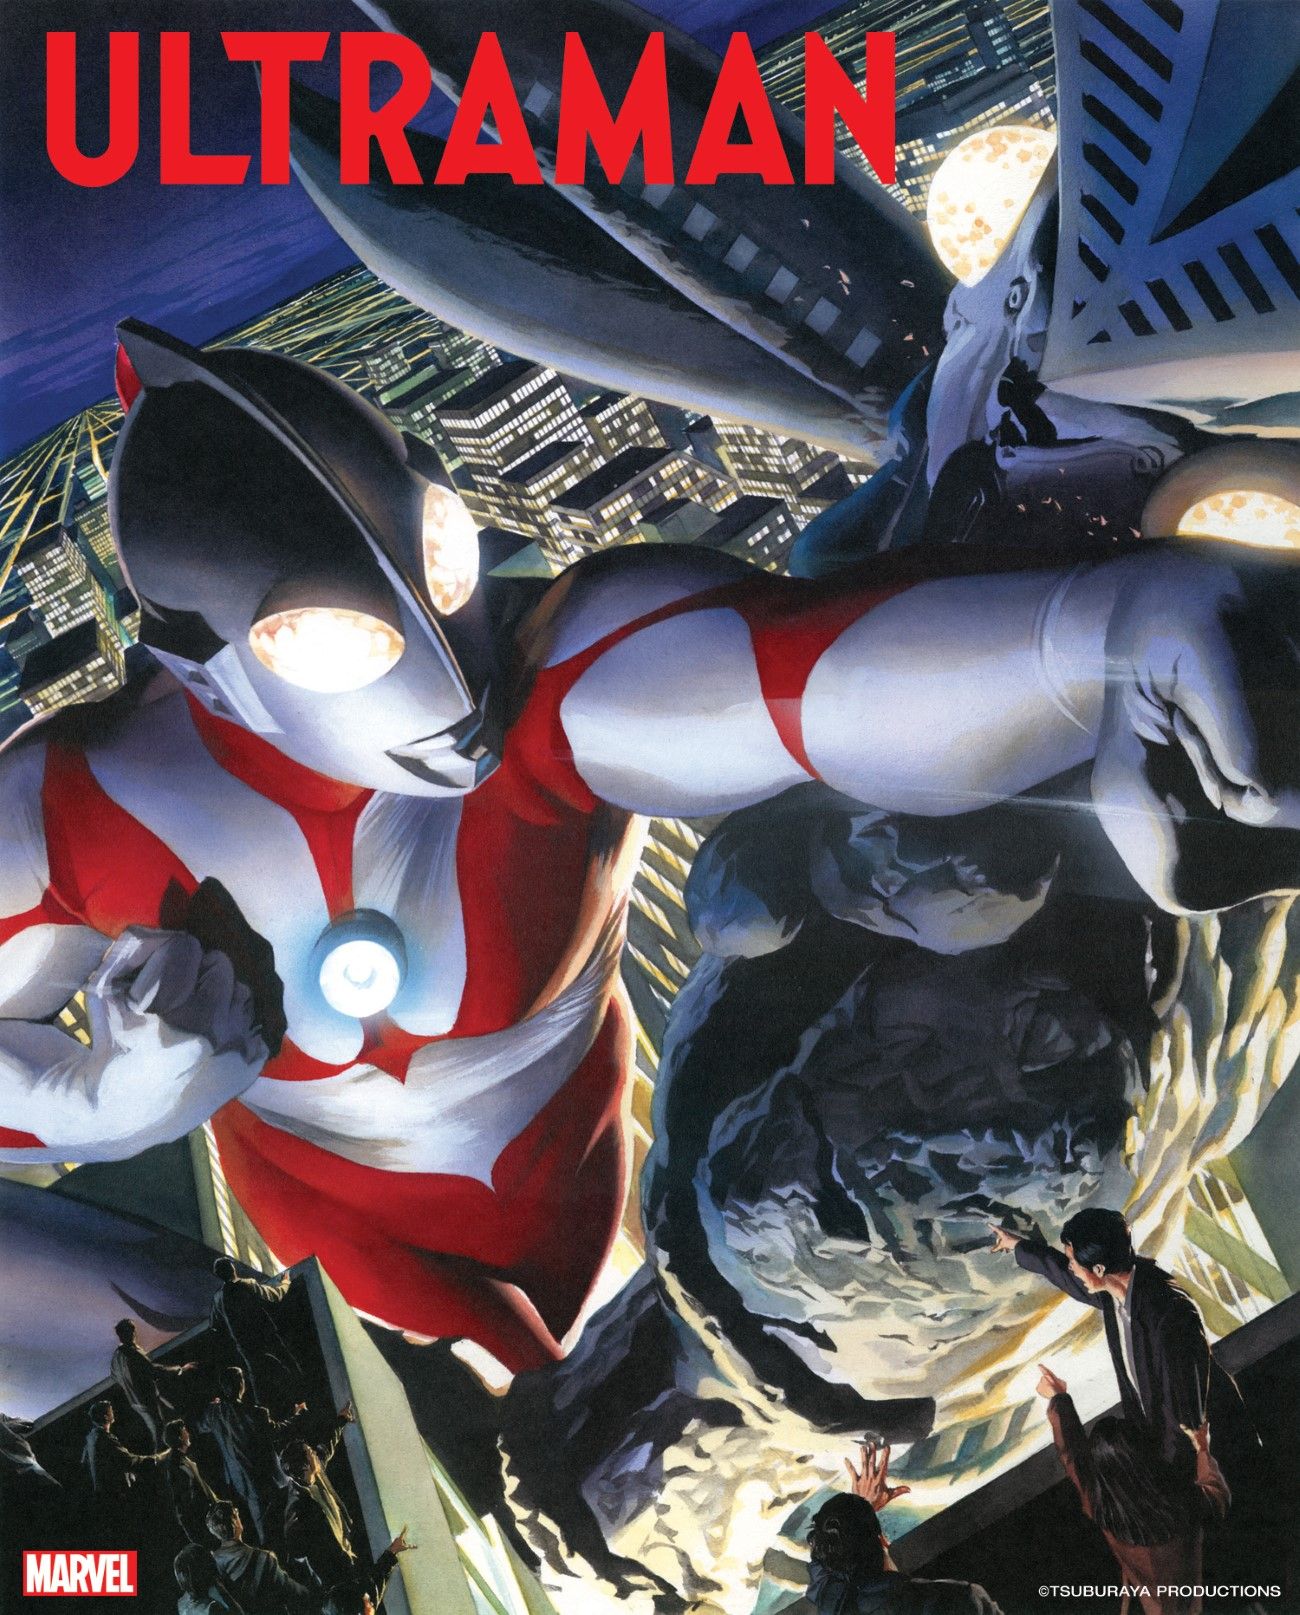 Ultraman New Marvel Comics Cover